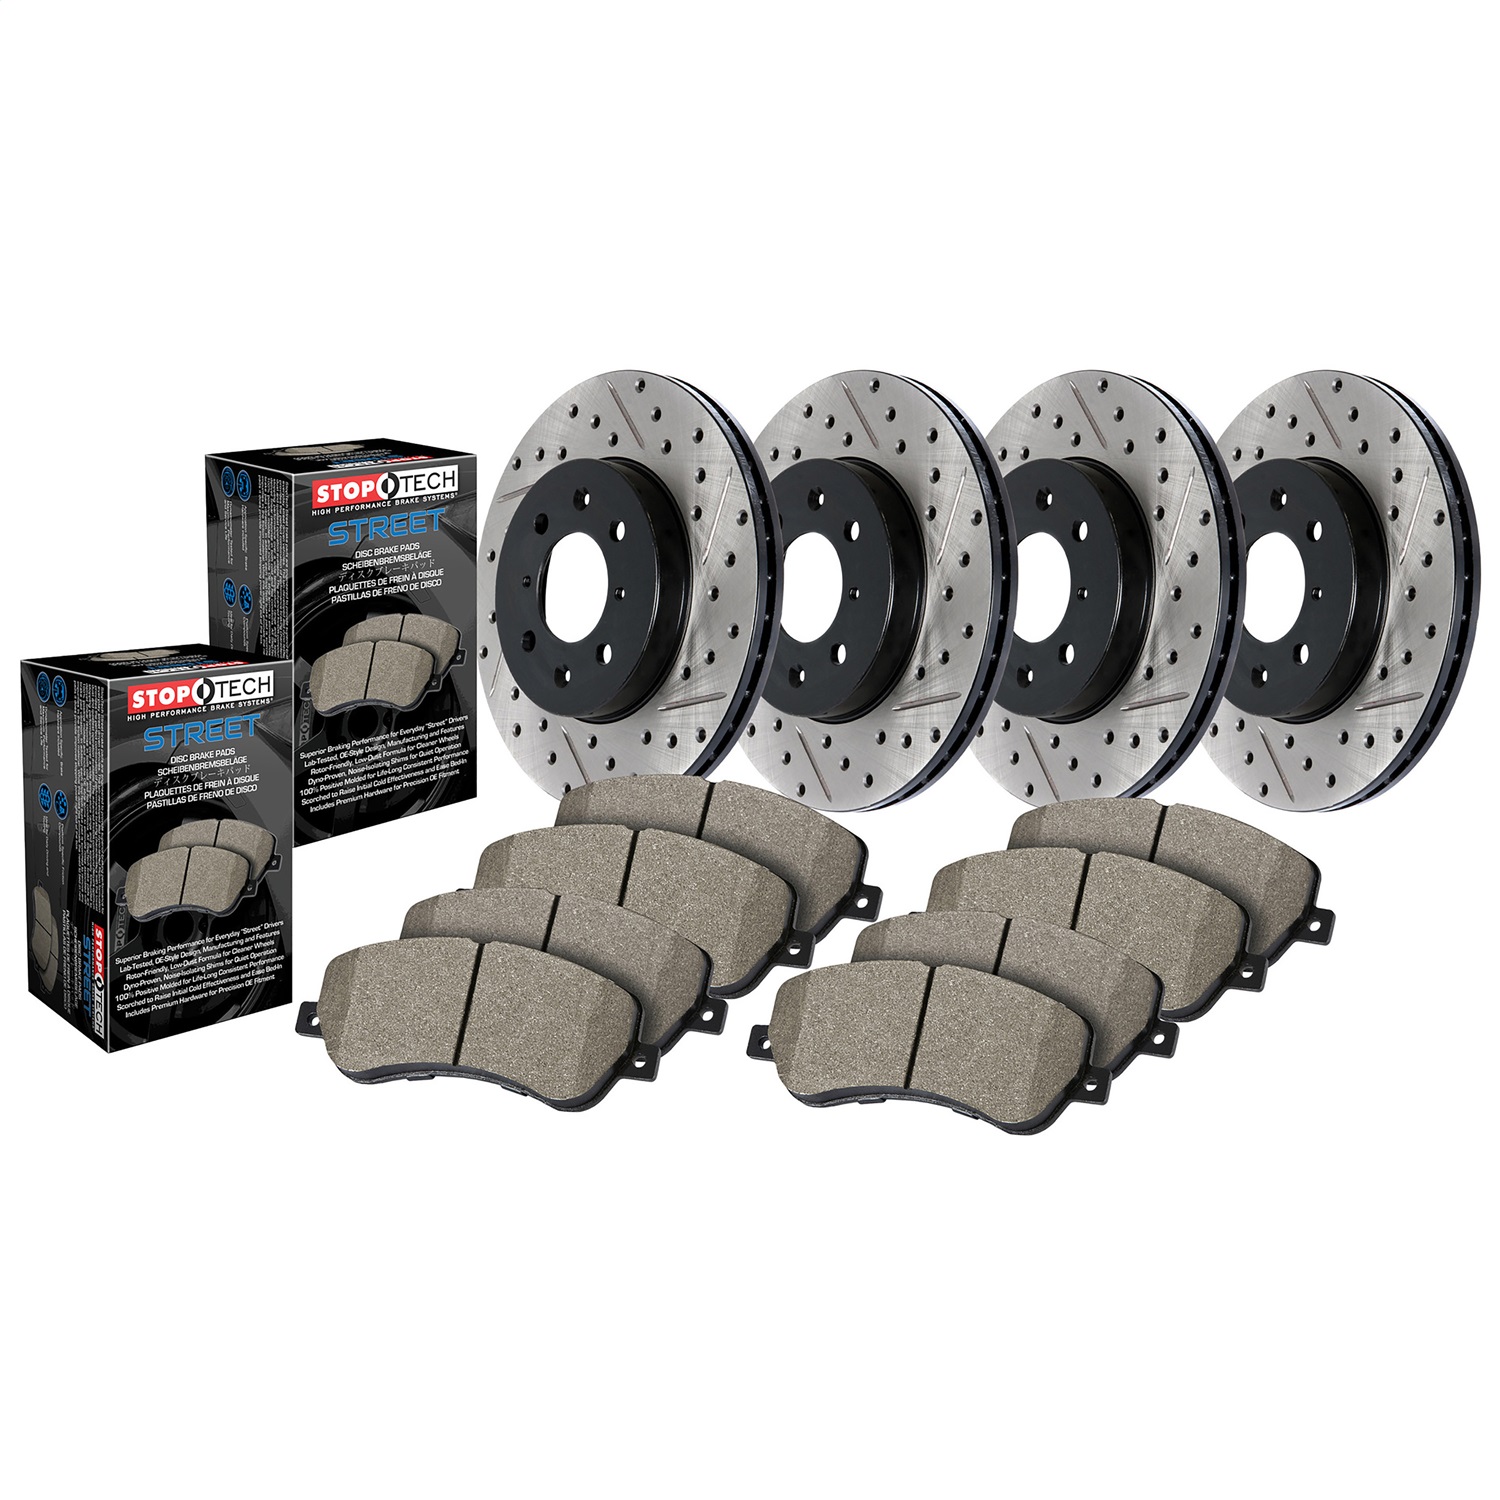 StopTech 935.61015 Disc Brake Upgrade Kit